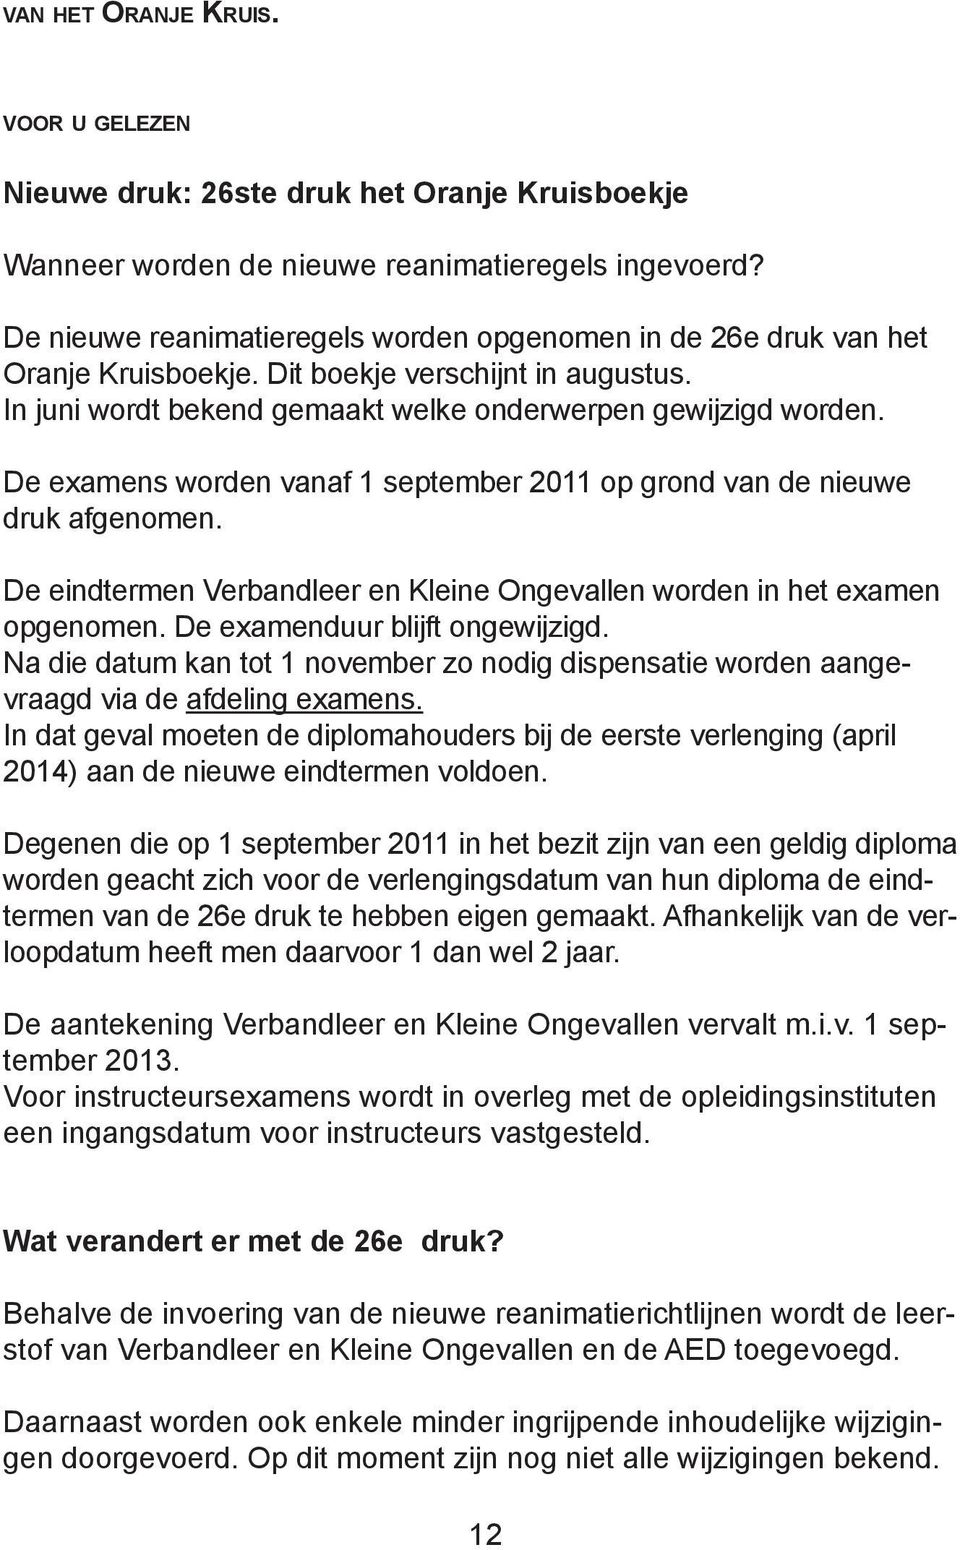 De examens worden vanaf 1 september 2011 op grond van de nieuwe druk afgenomen. De eindtermen Verbandleer en Kleine Ongevallen worden in het examen opgenomen. De examenduur blijft ongewijzigd.